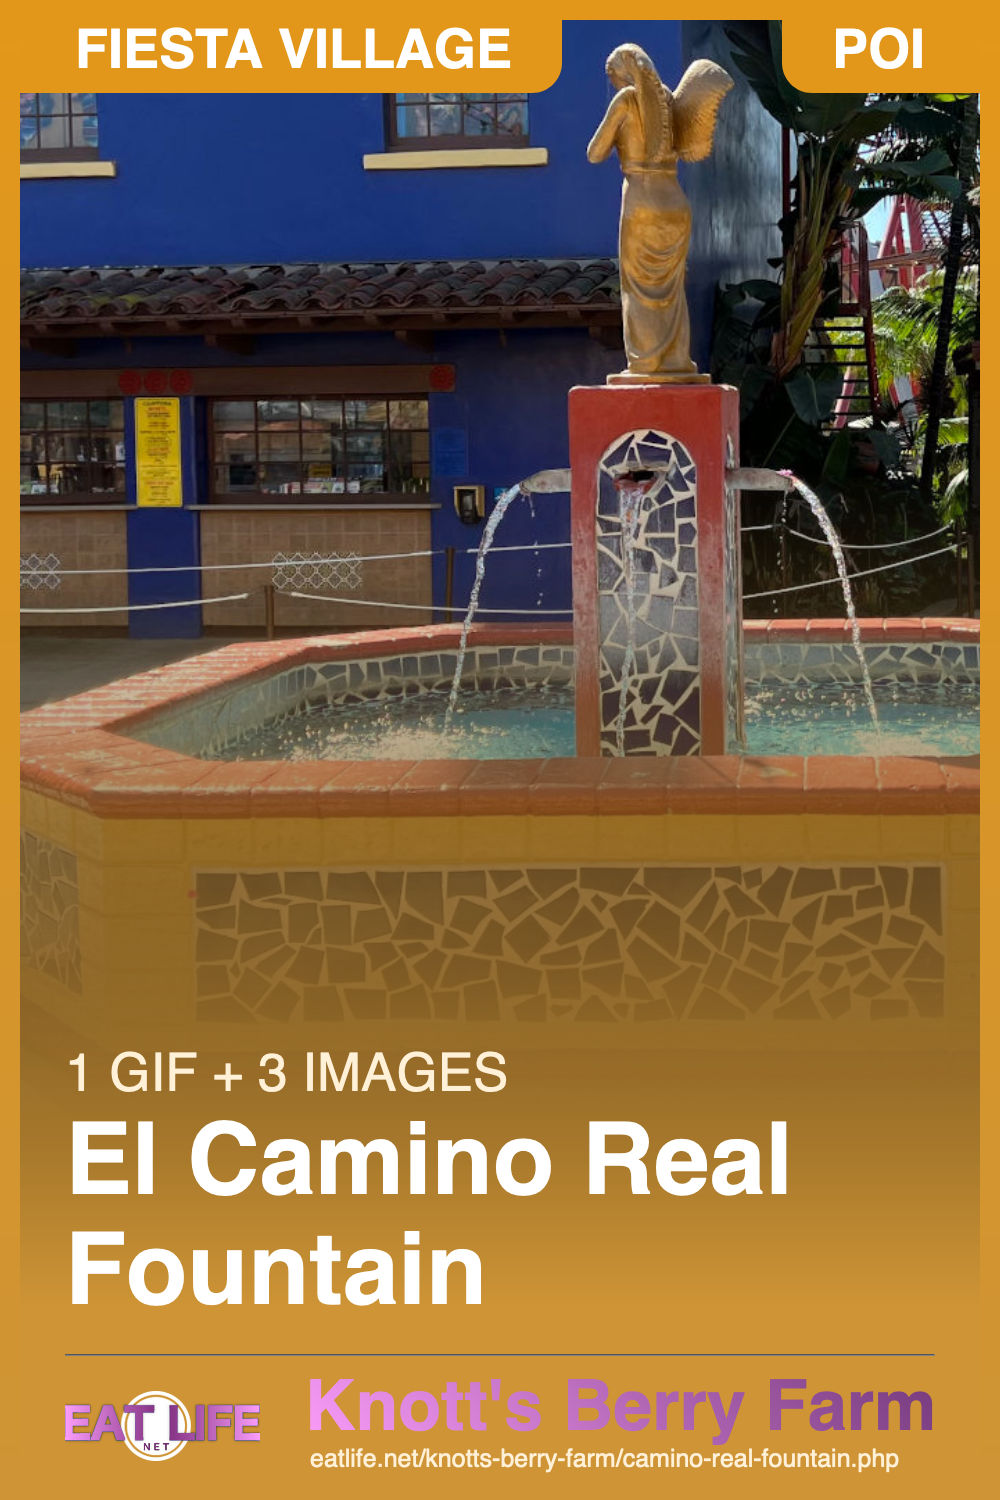 El Camino Real Fountain